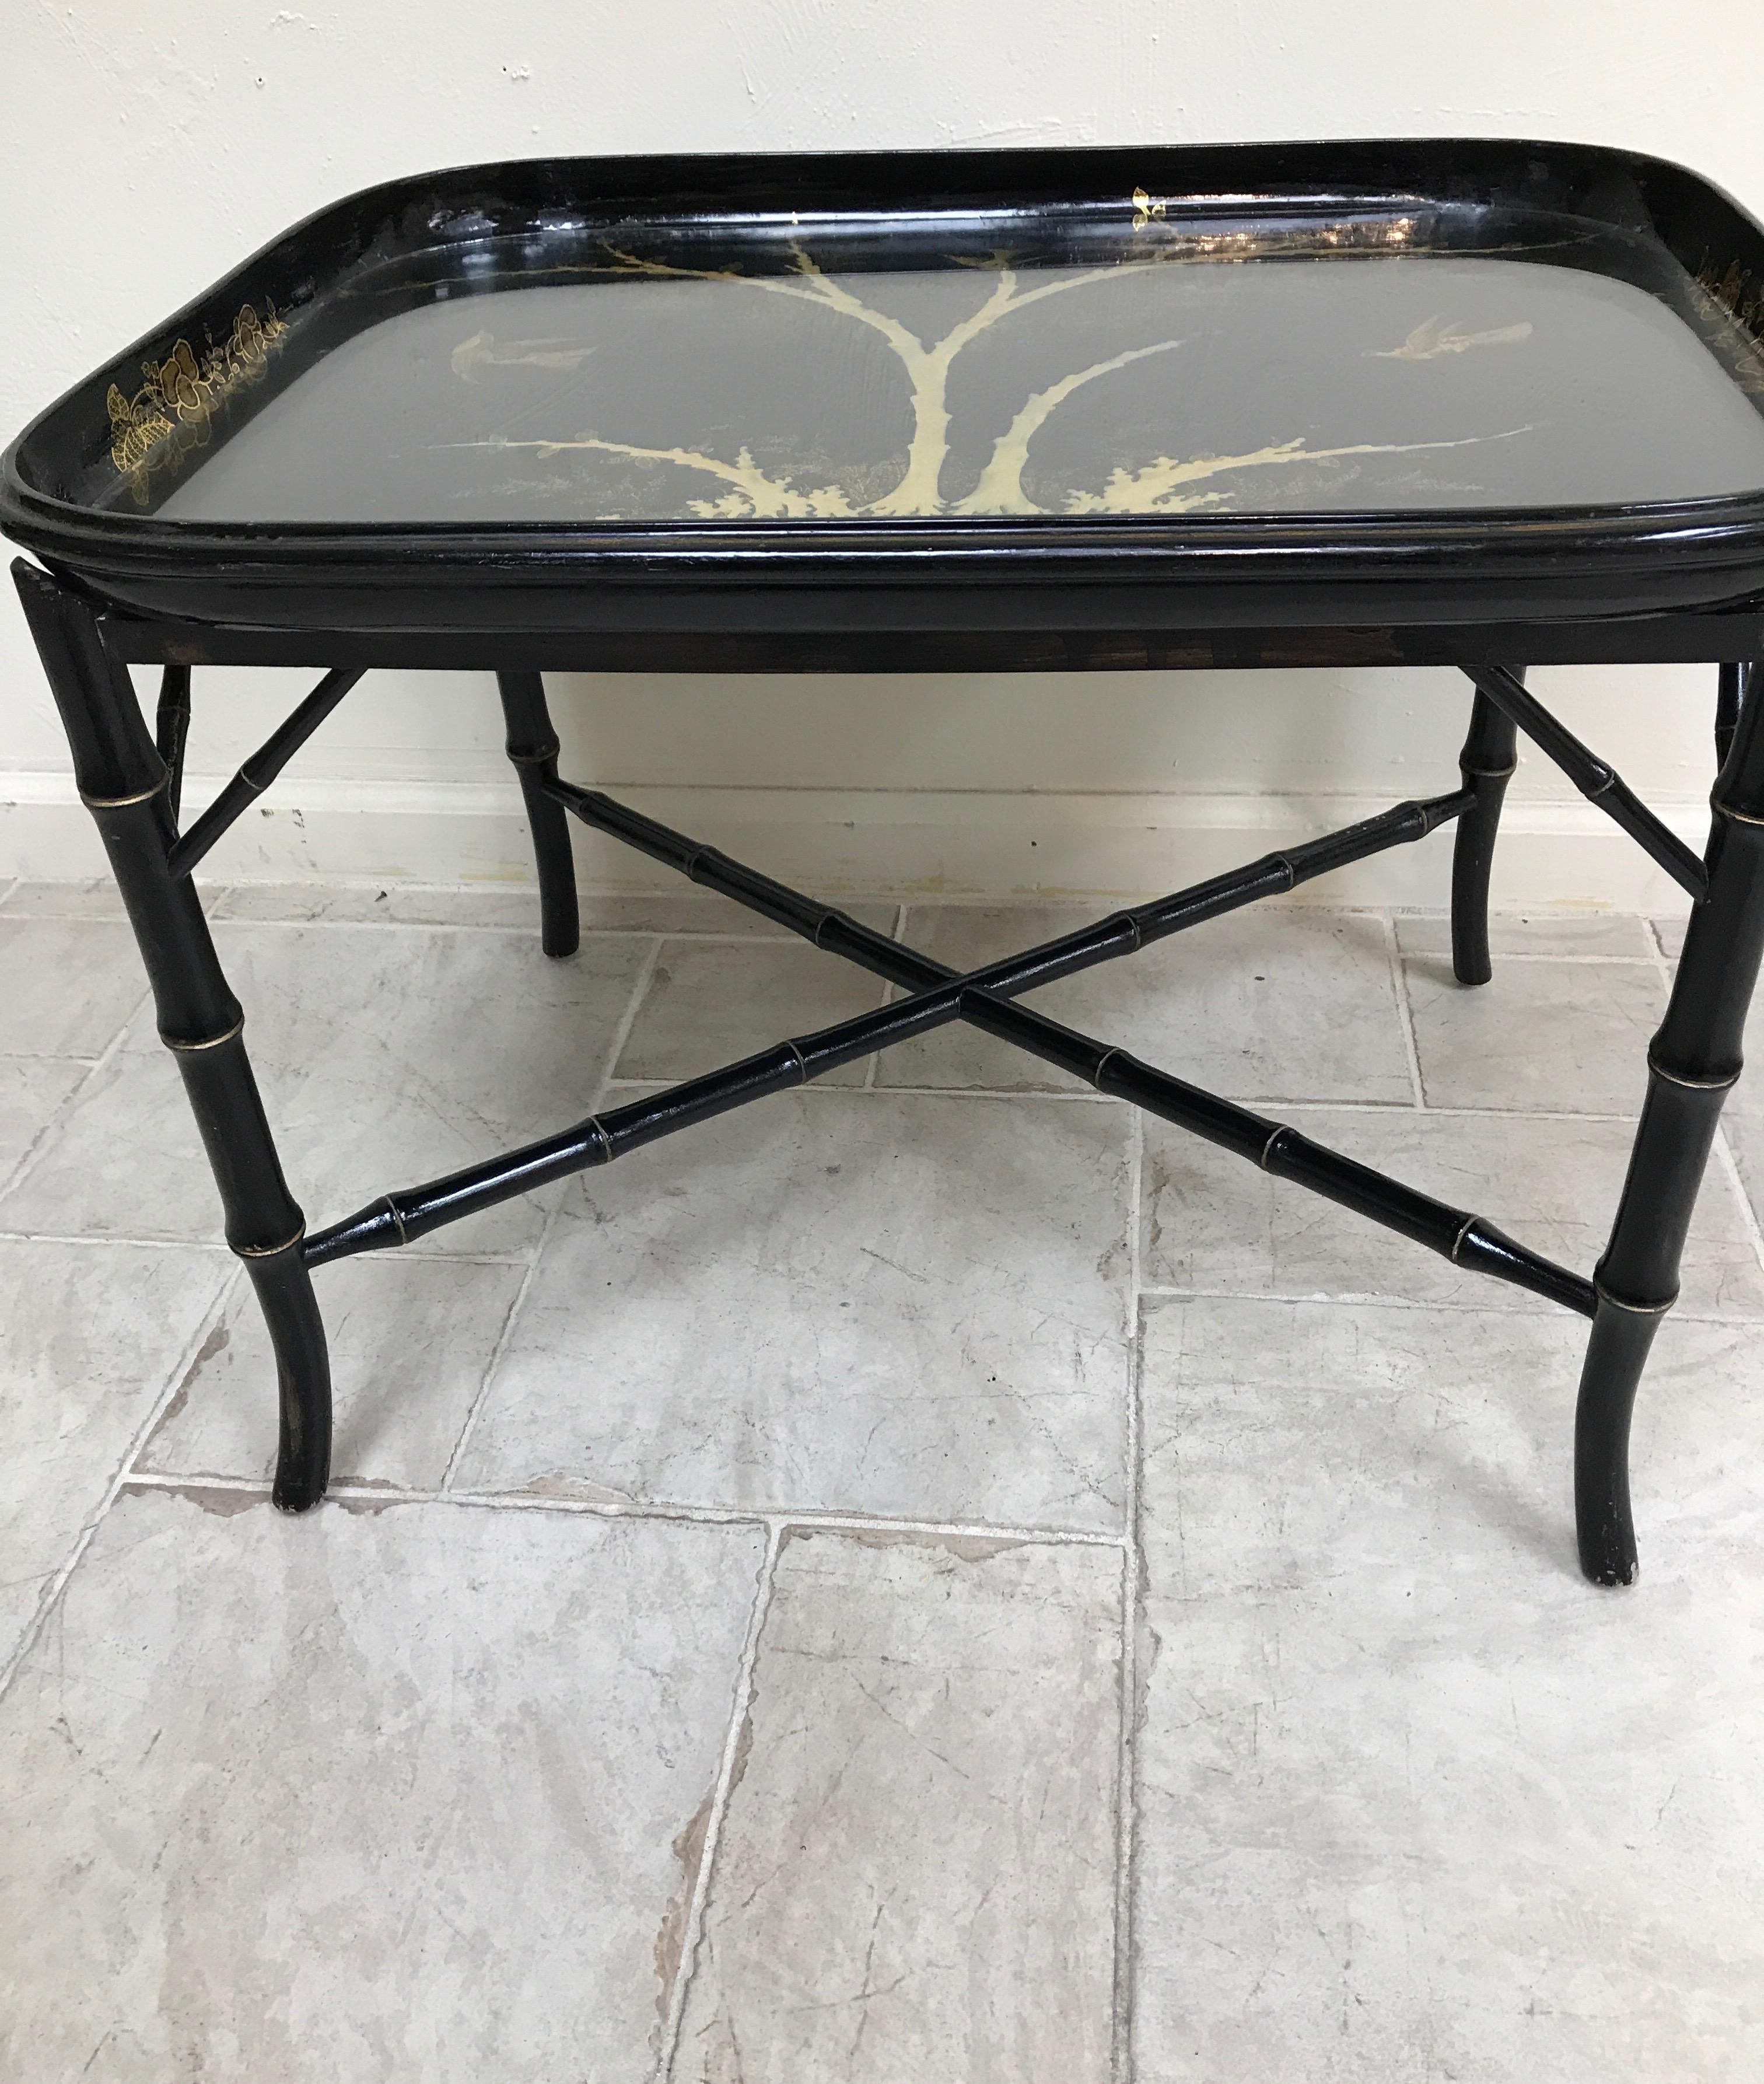 Antiker Pappmaché-Tisch in Schwarz und Gold. Der Sockel ist ein schwarz lackiertes Bambusimitat. Das Tablett ist mit einem Schutzglas versehen, das das vergoldete Baum- und Vogelmotiv abdeckt.